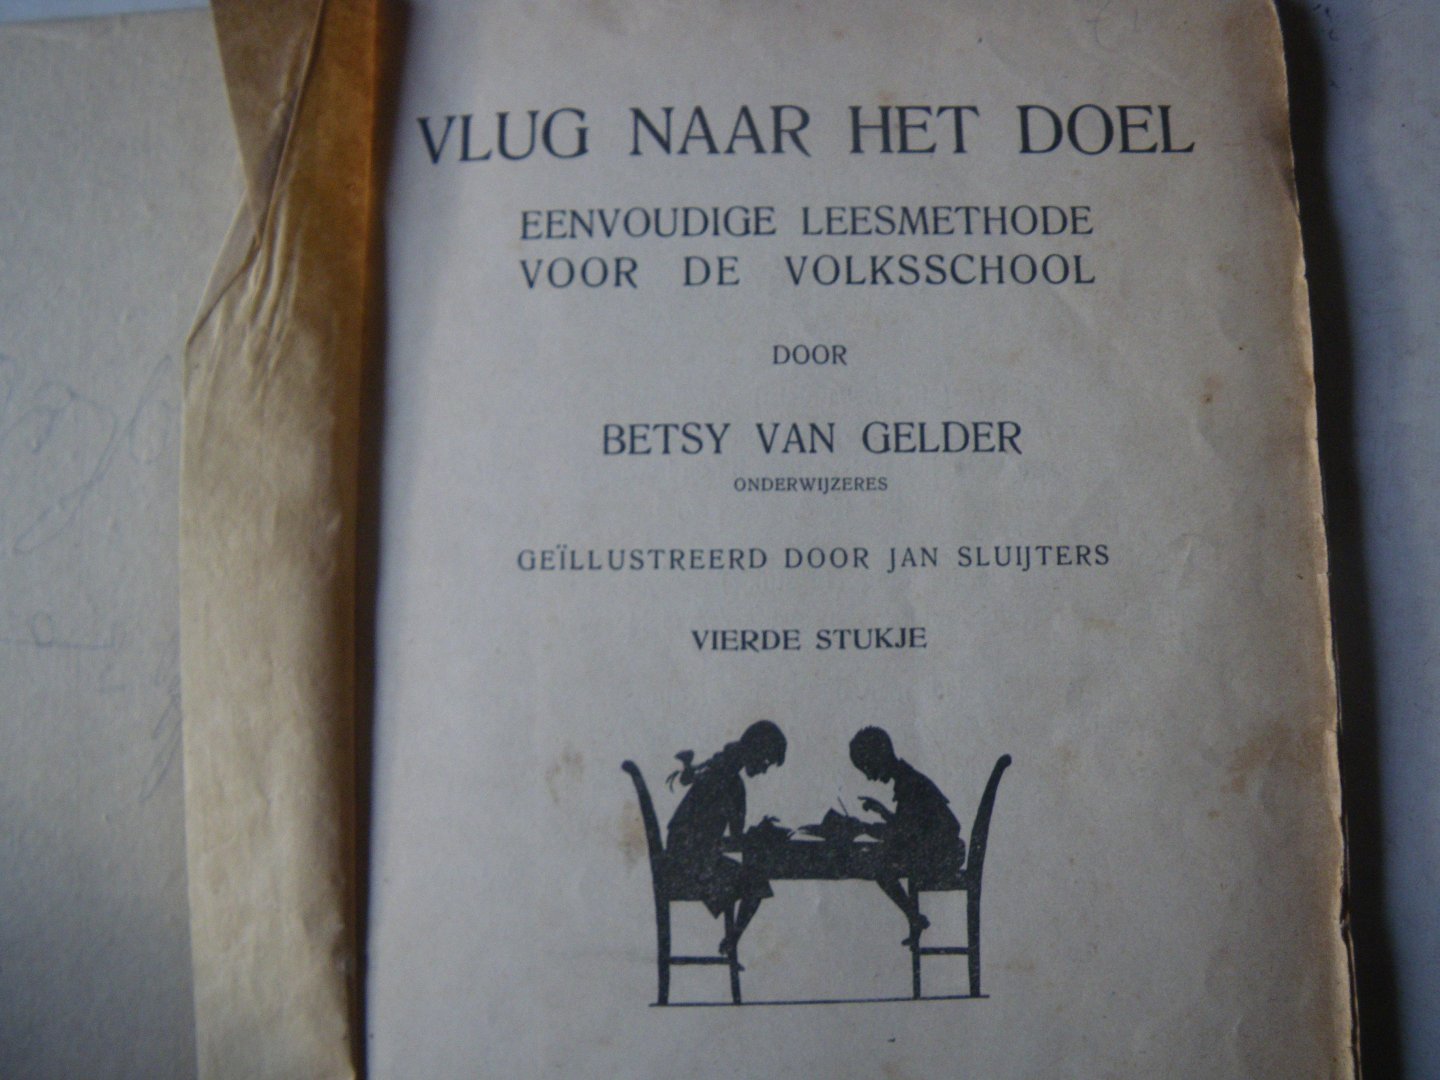 Gelder, Betsy van (onderwijzeres) Geillustreerd Jan Sluijters - Vlug naar het doel eenvoudige leesmethode voor de volksschool